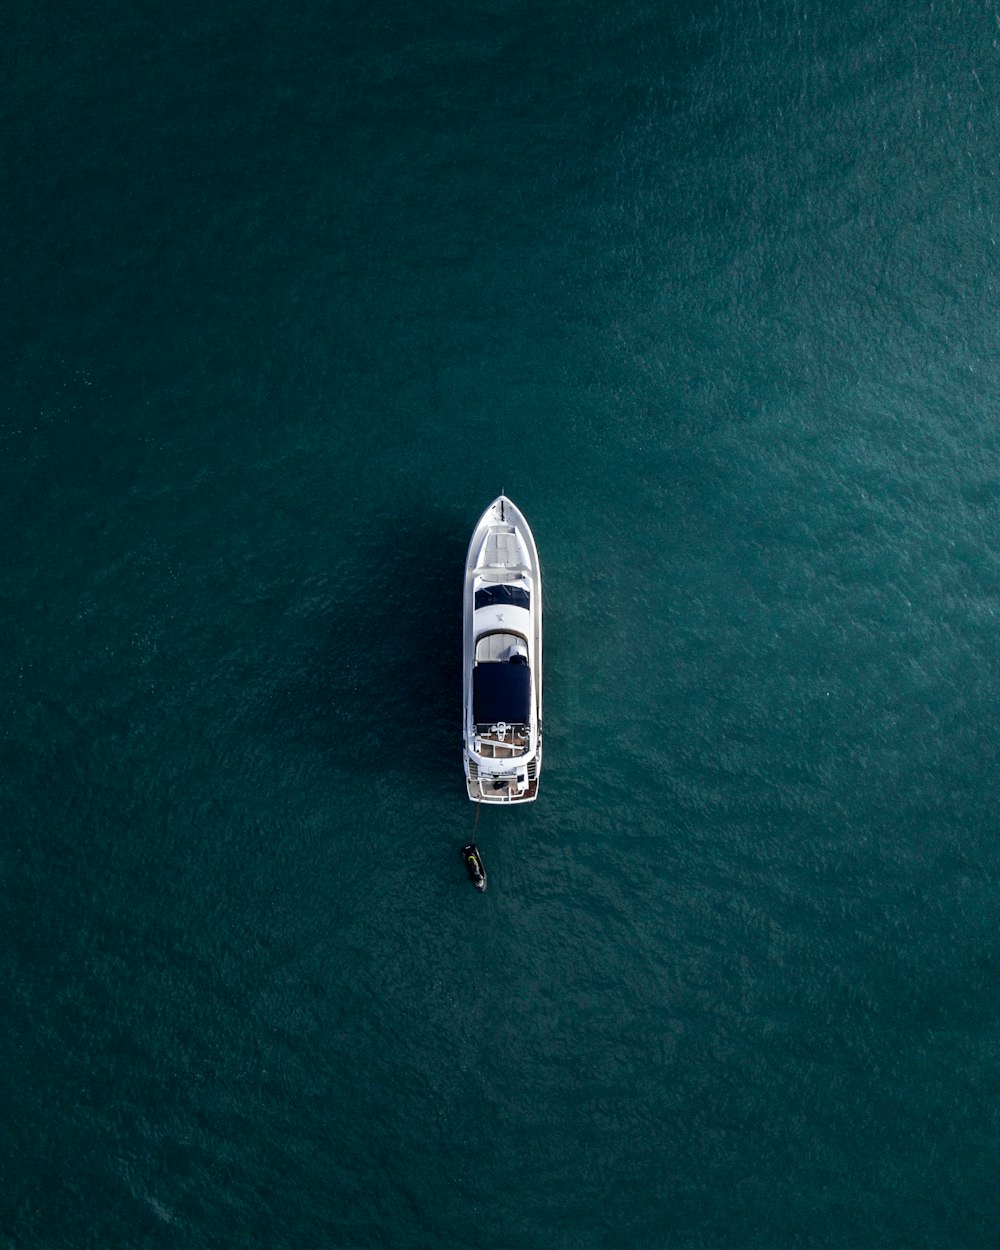 Photographie aérienne d’un yacht blanc sur des eaux calmes